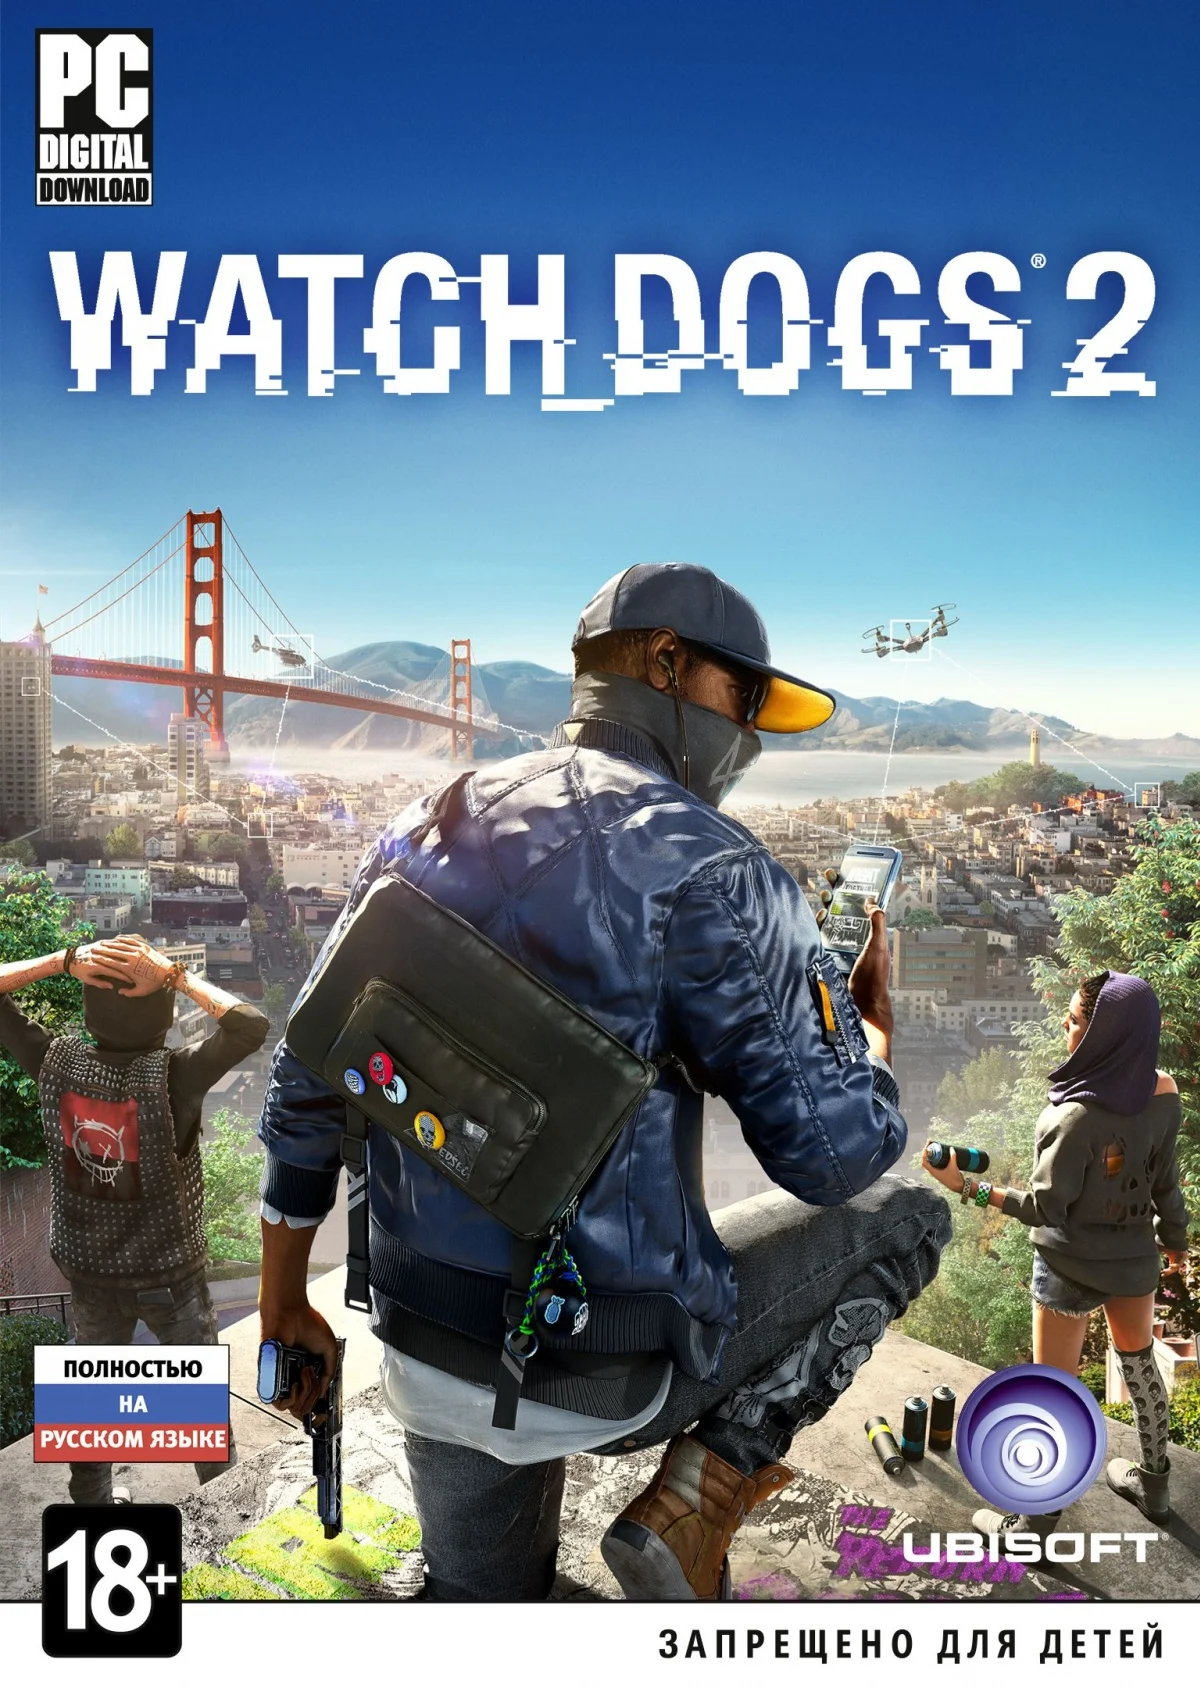 Watch Dogs 2 вышла на РС - фото 3